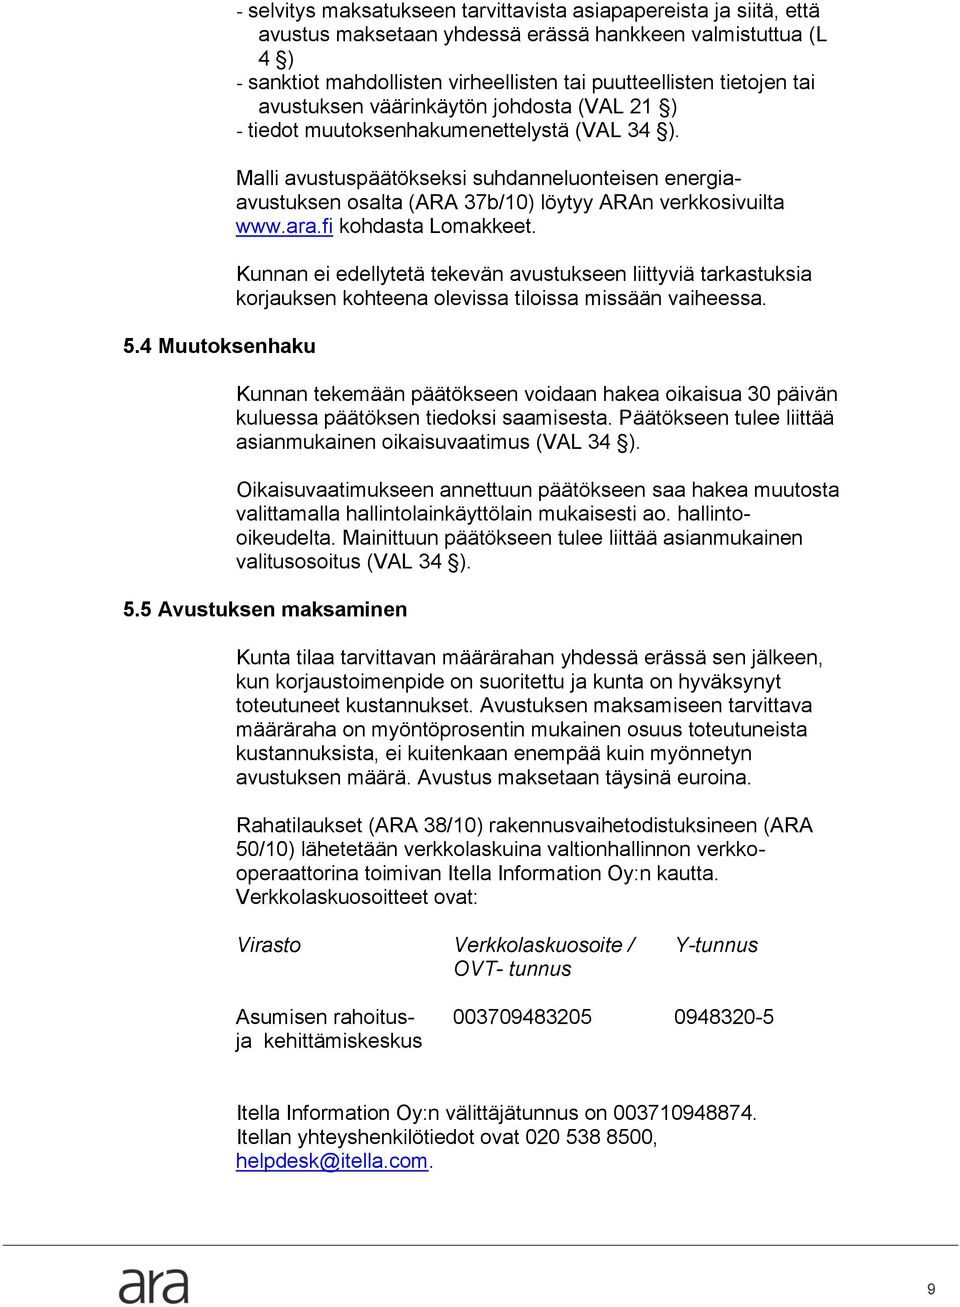 Malli avustuspäätökseksi suhdanneluonteisen energiaavustuksen osalta (ARA 37b/10) löytyy ARAn verkkosivuilta www.ara.fi kohdasta Lomakkeet.